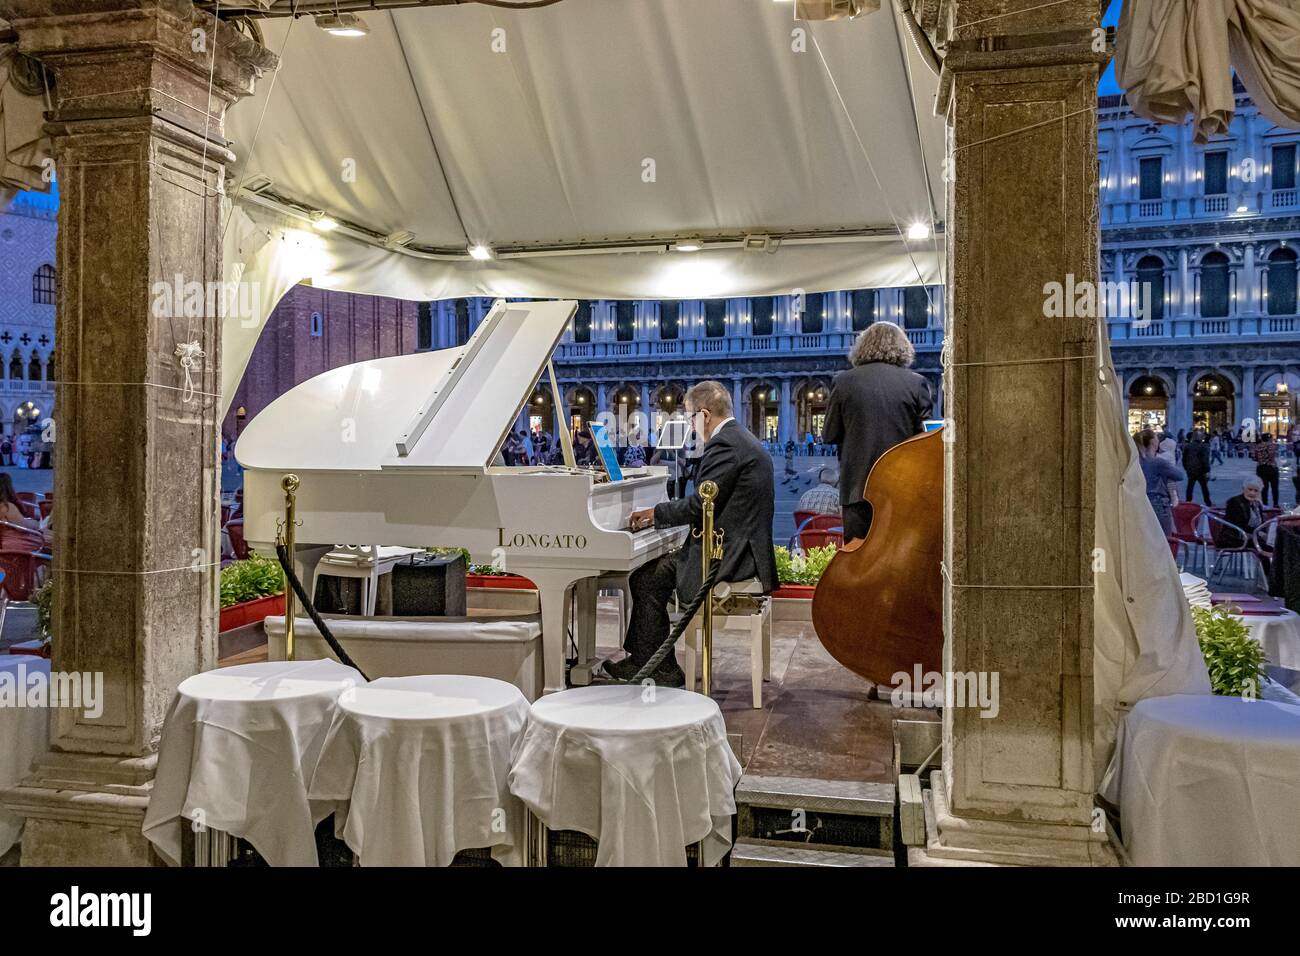 Un homme jouant un piano blanc en début de soirée devant le Ristorante Quadri un restaurant opulent surplombant la place Saint-Marc, Venise, Italie Banque D'Images